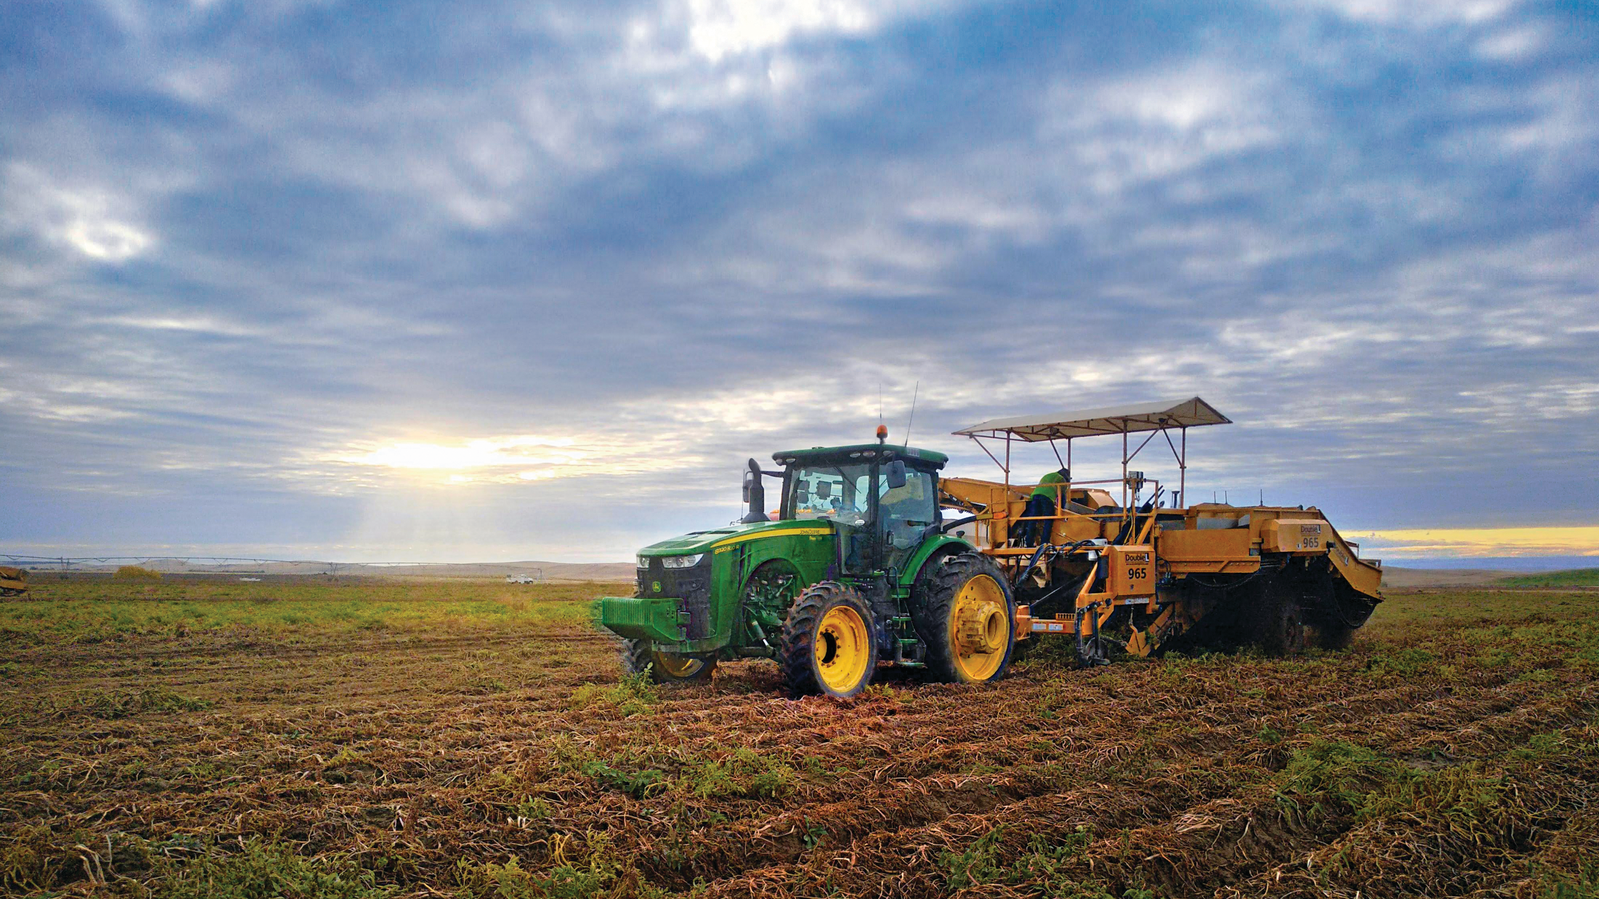 John Deere equipment plowing a field